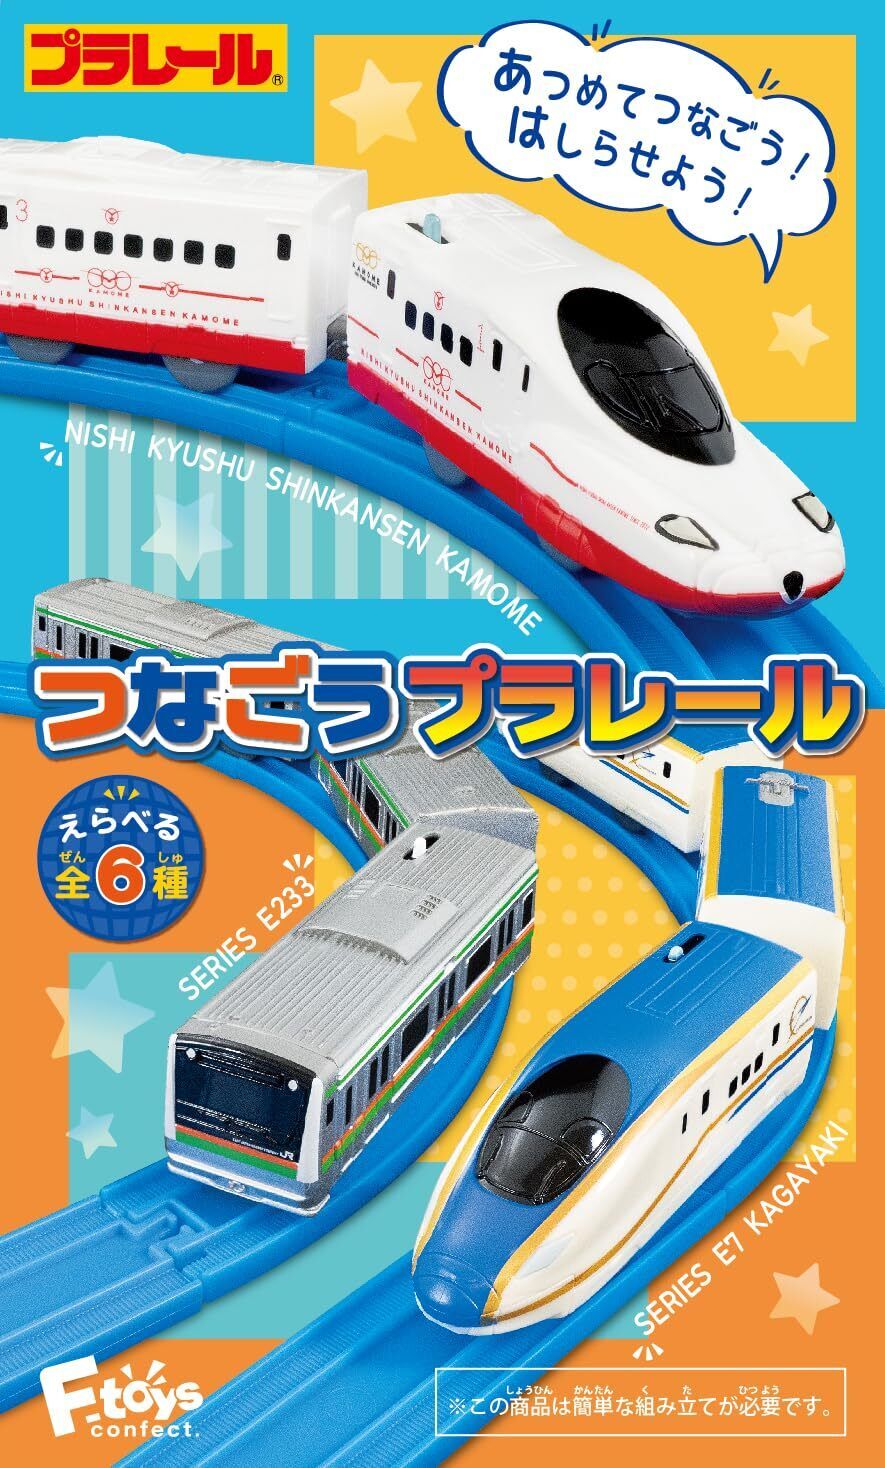 F-toys Confect Tsunagou Plarail11 10 pieces Candy Toy Gum